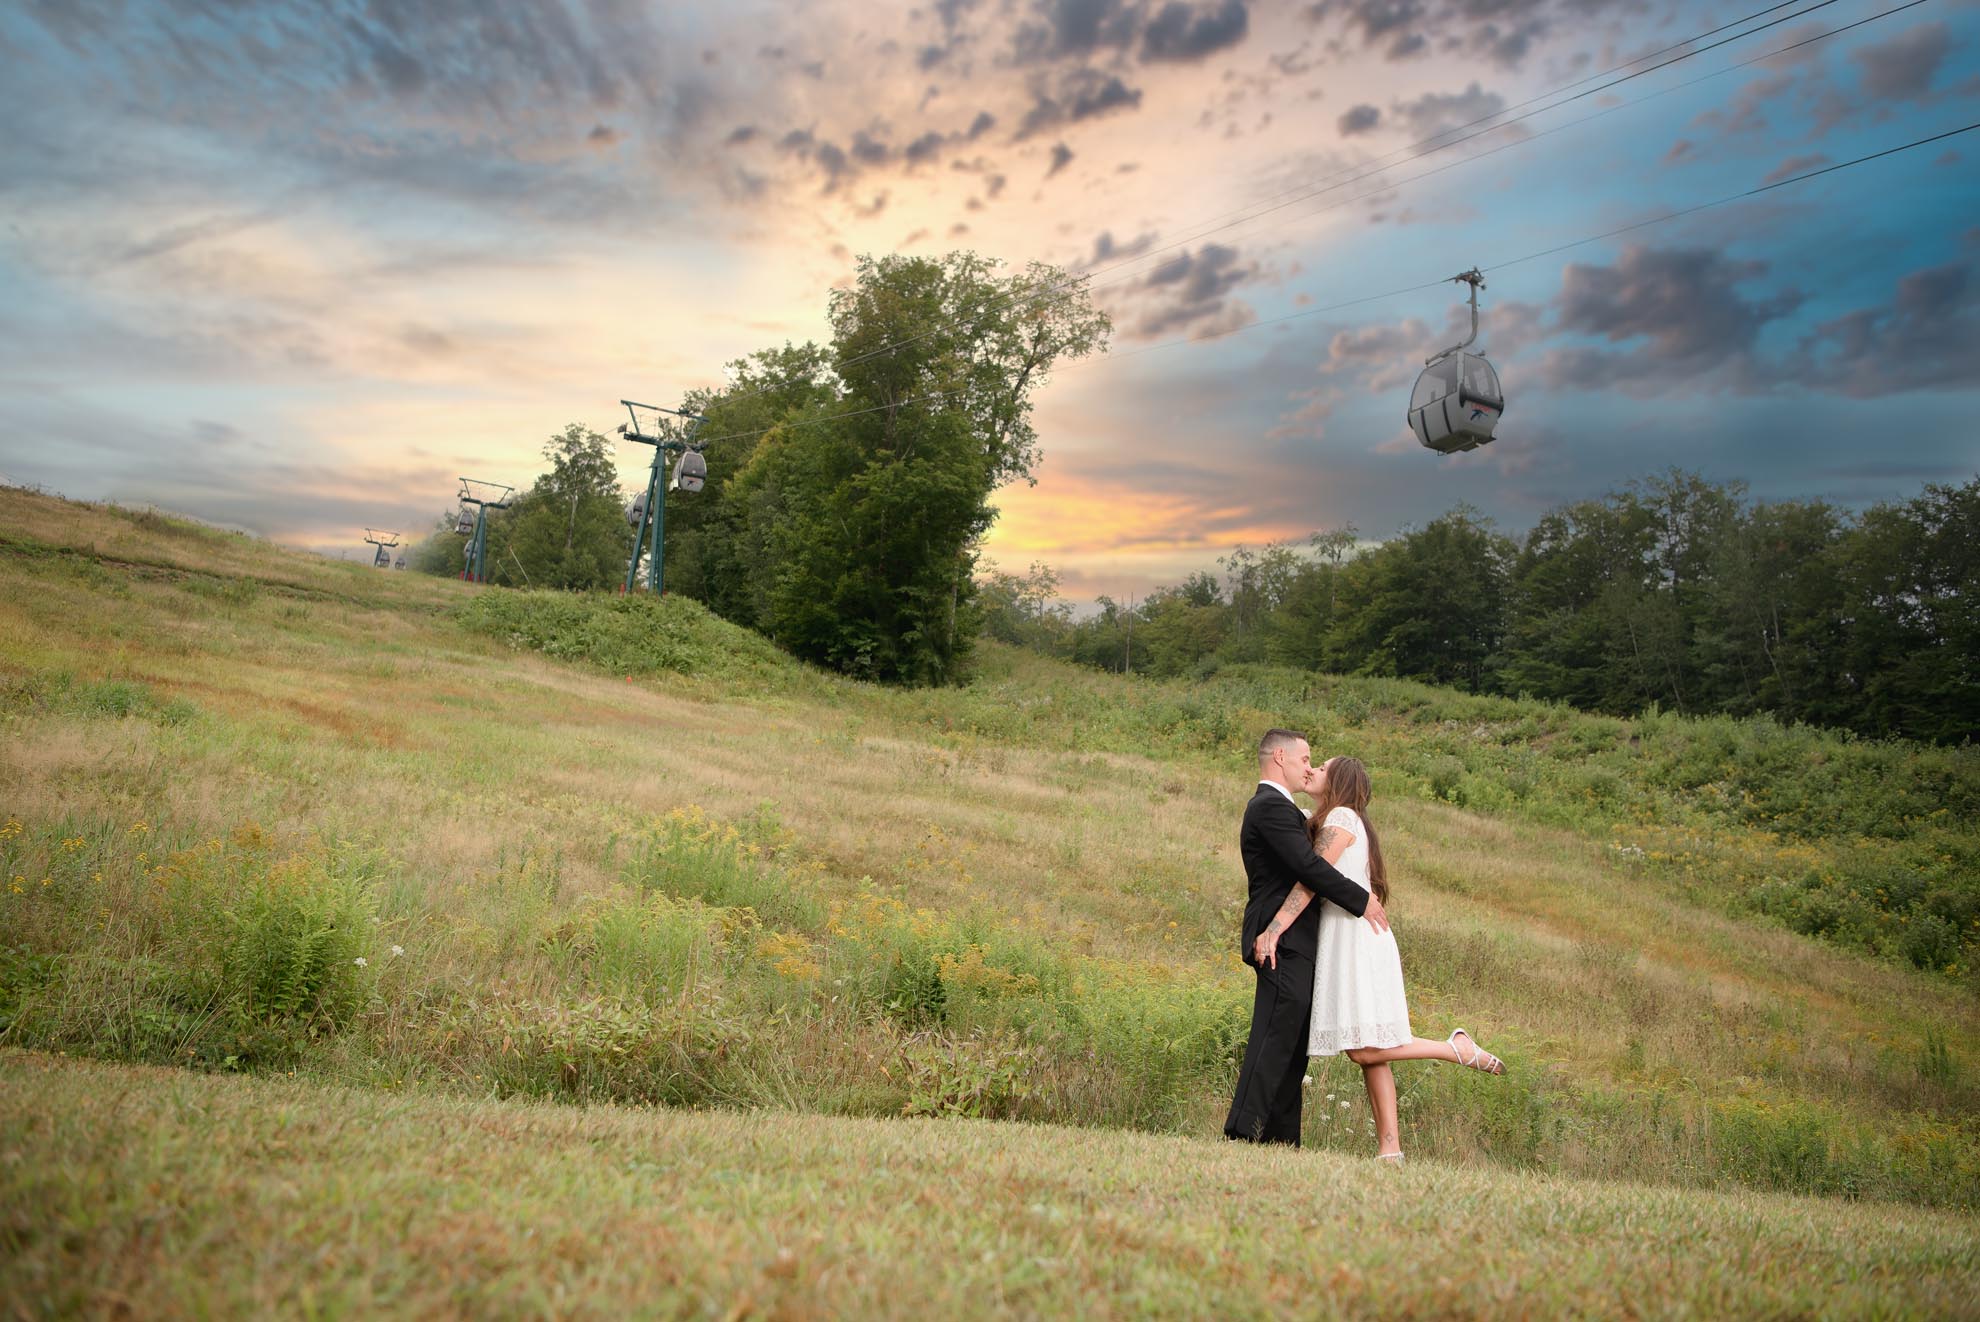 White Mountains Wedding 1 - Portfolio: Engagements / Weddings